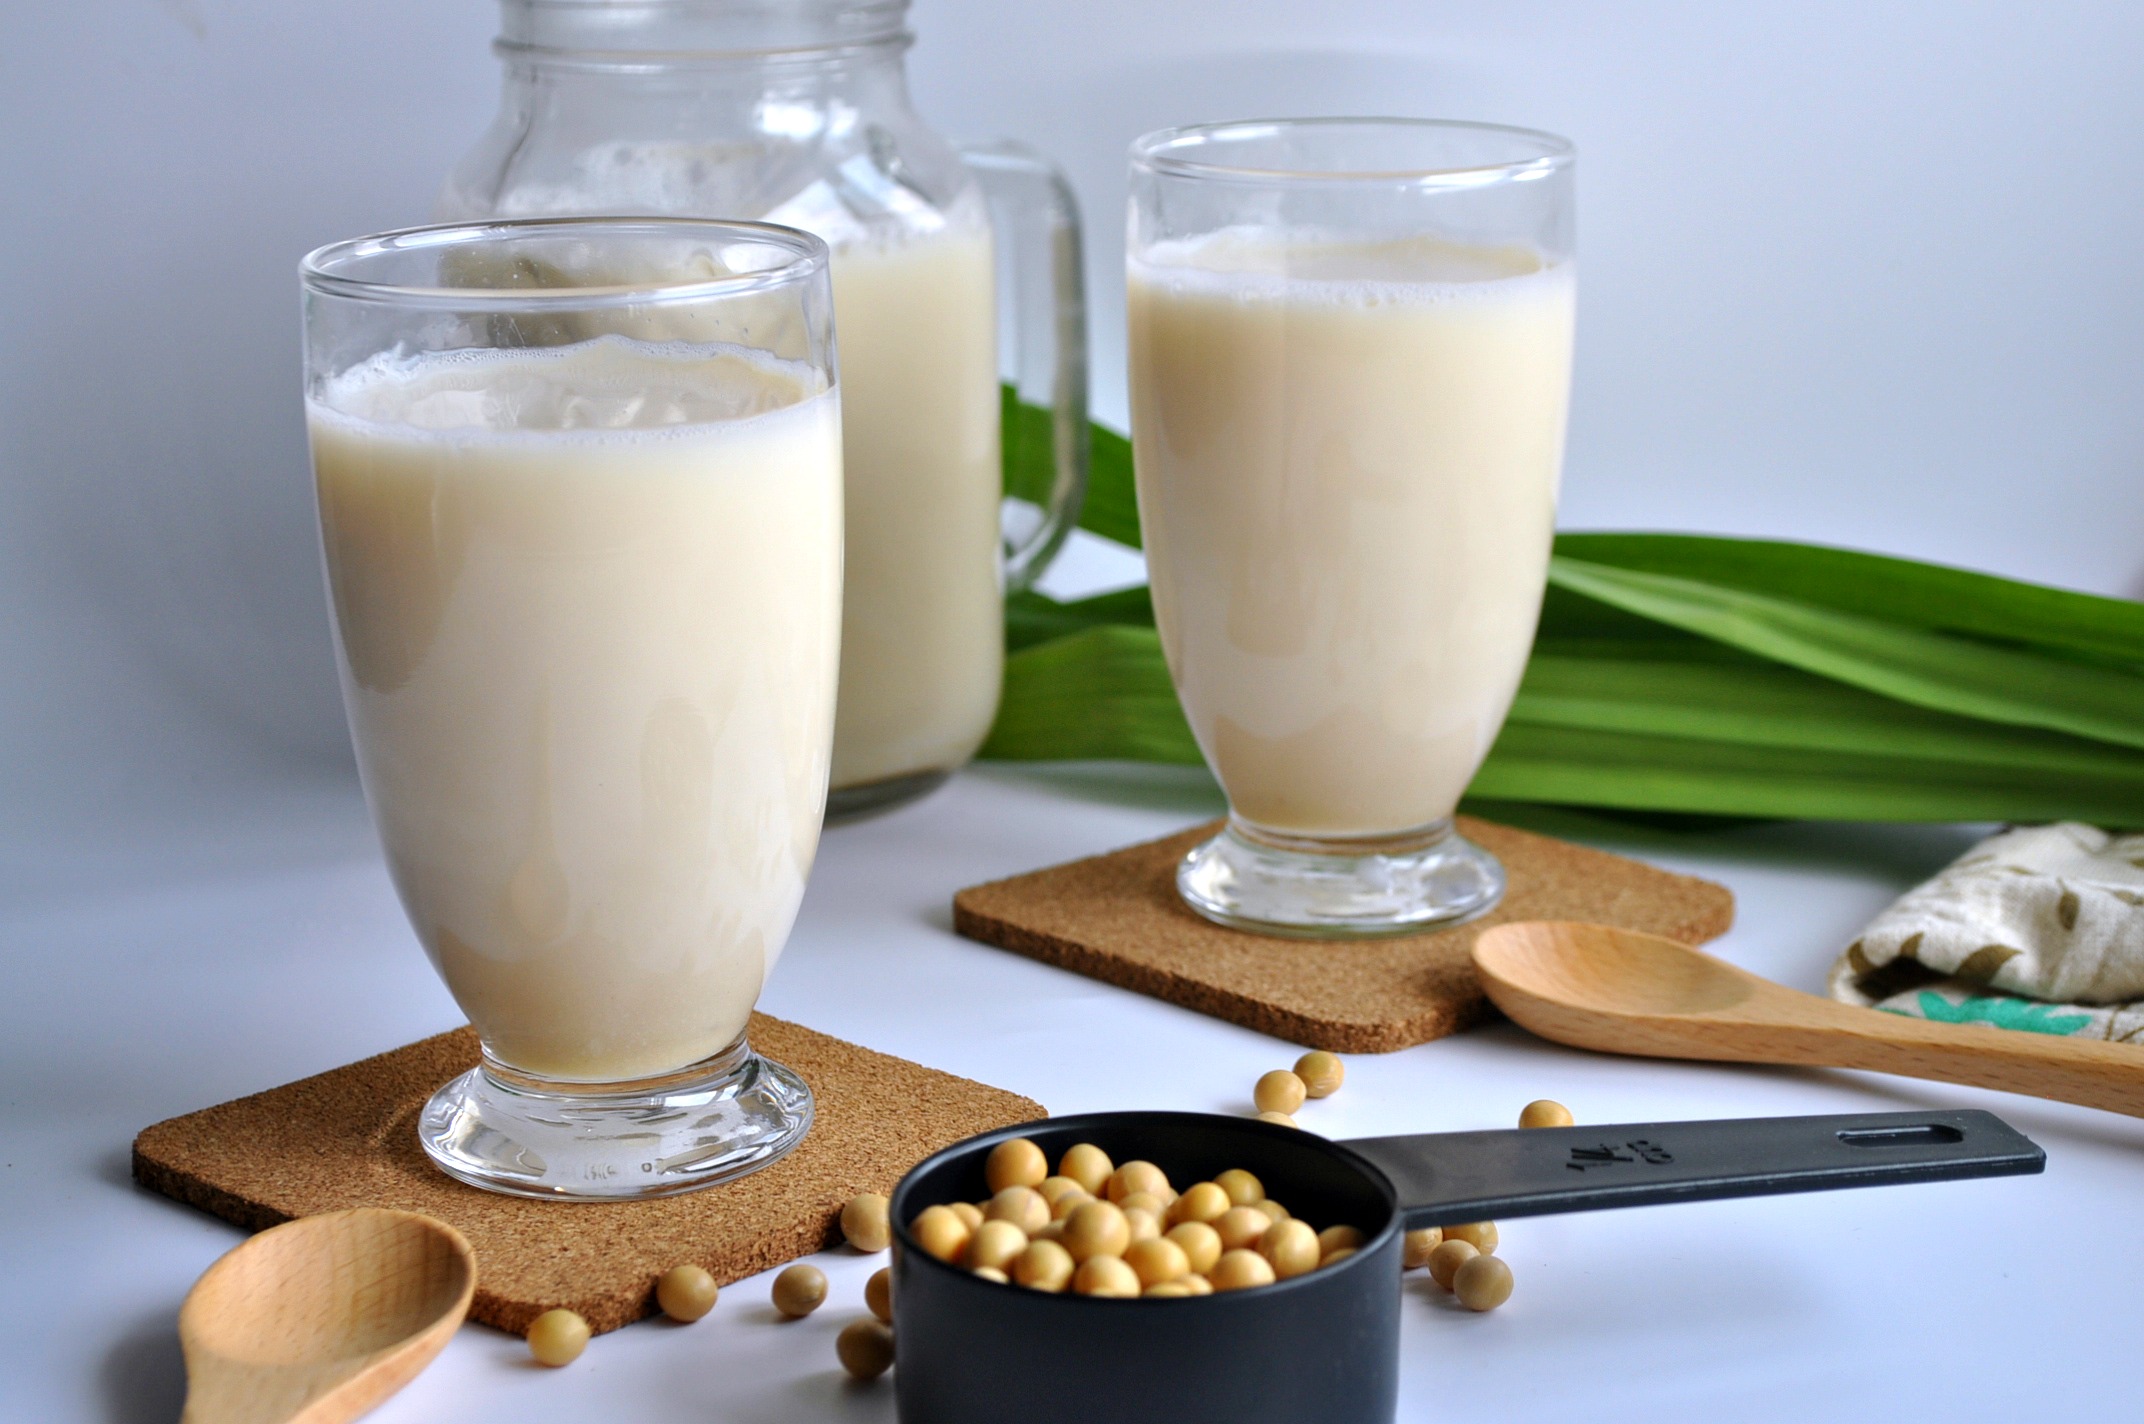 How to make Soya milk like a pro